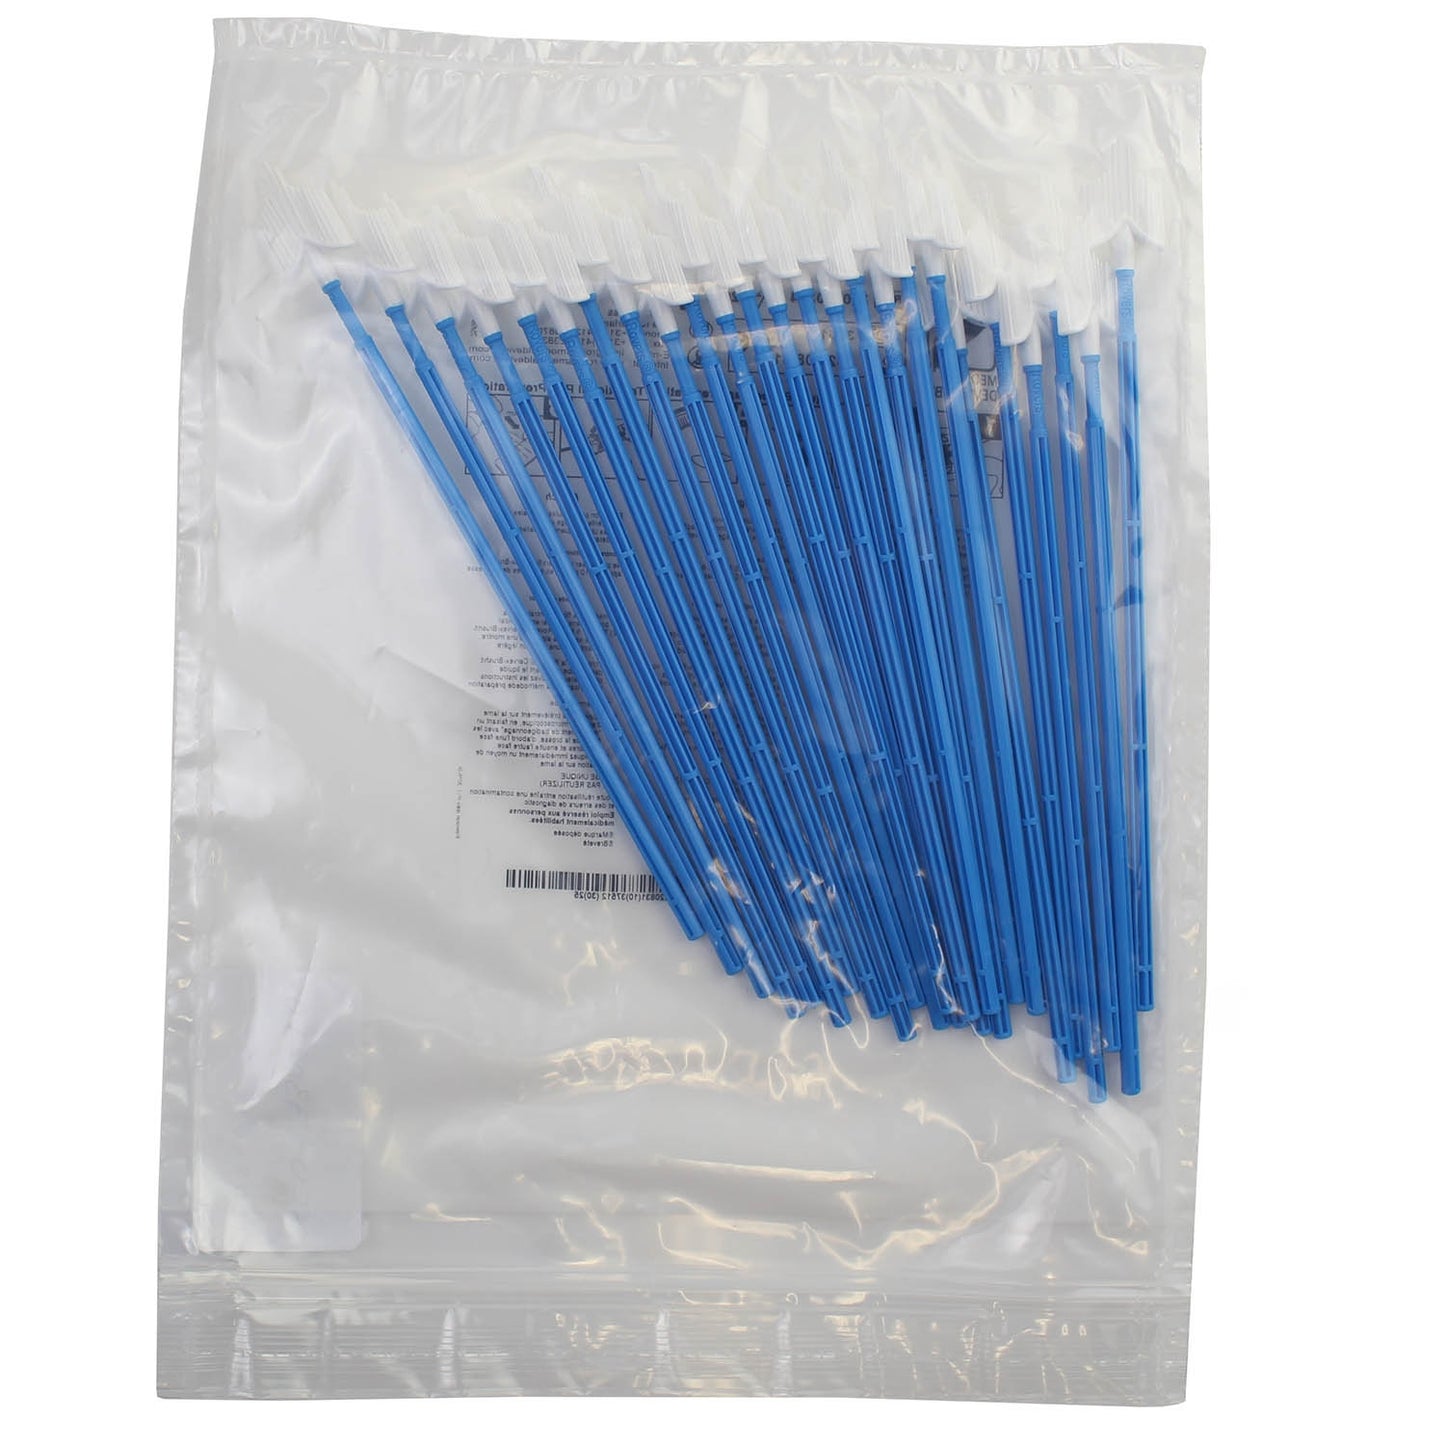 Cervex Sampling Brush - Sterile - Pack of 100